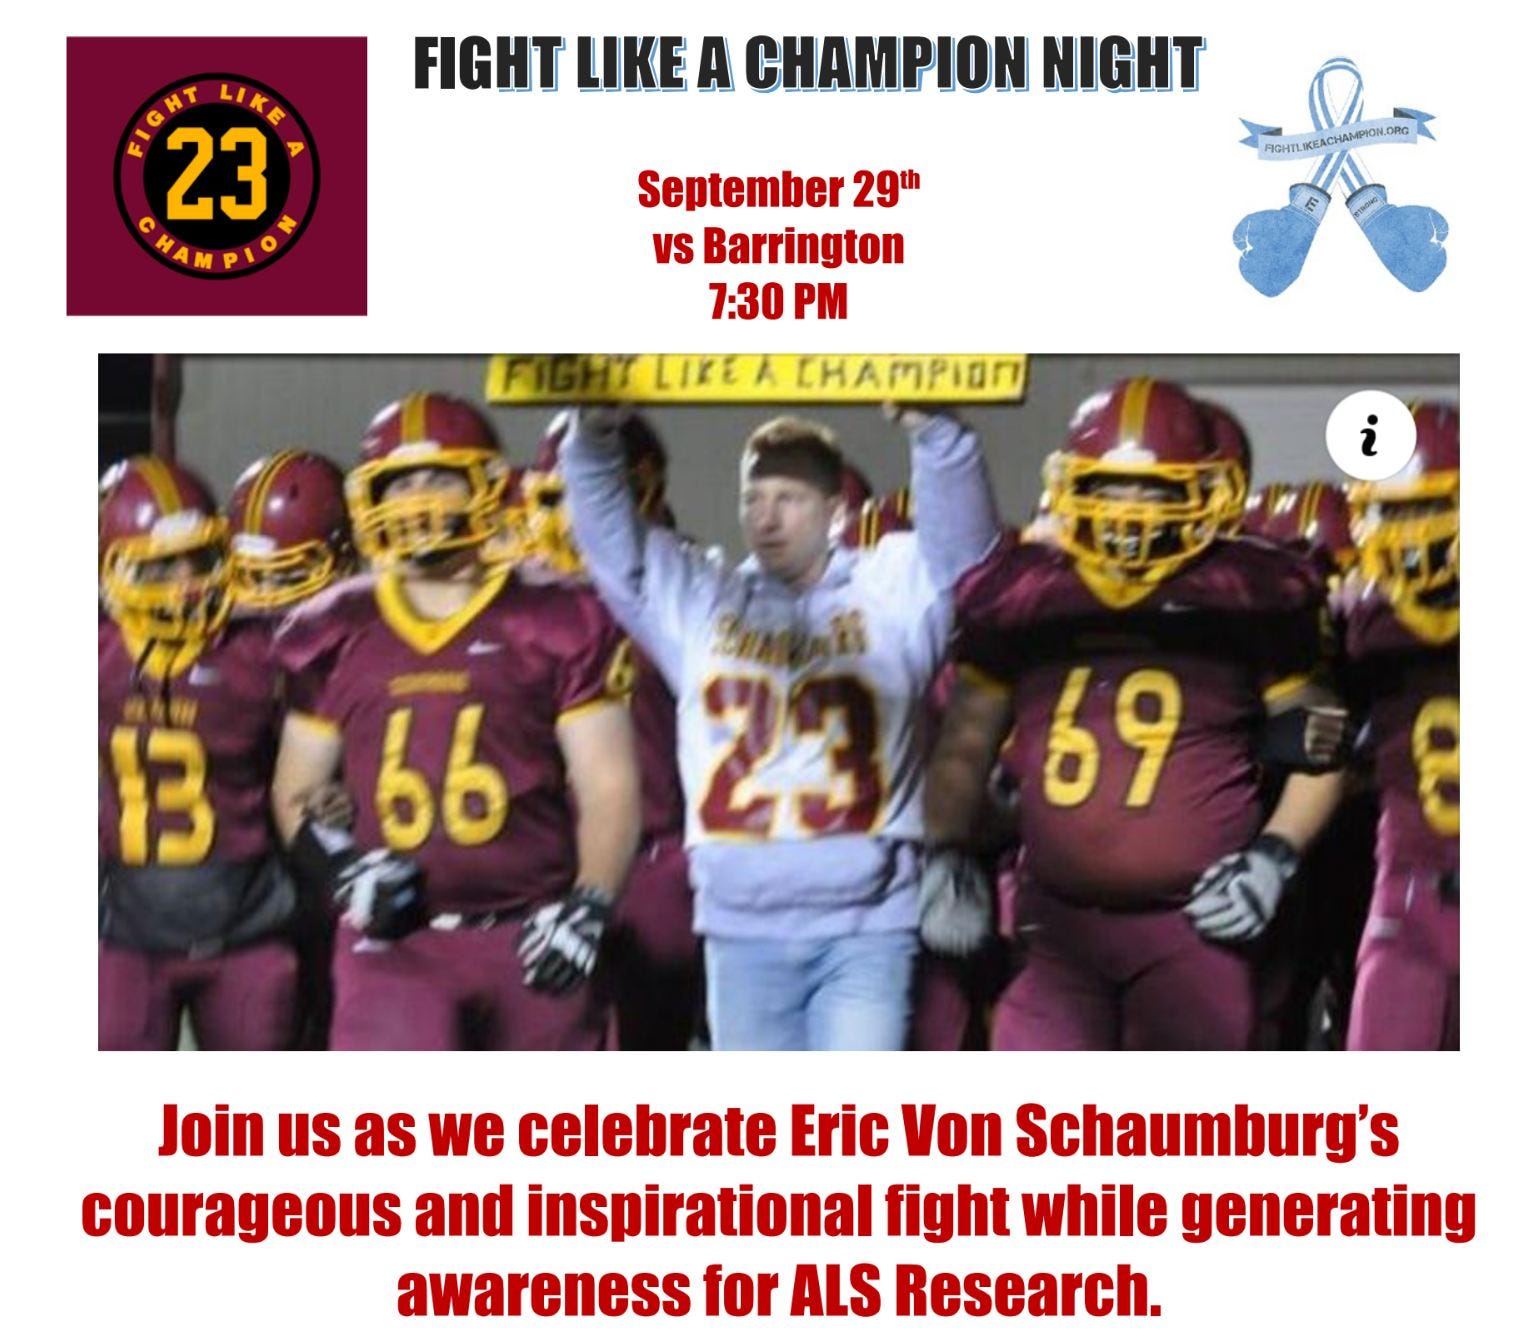 Schaumburg Remembers Von Schaumburg's Fight Like A Champion